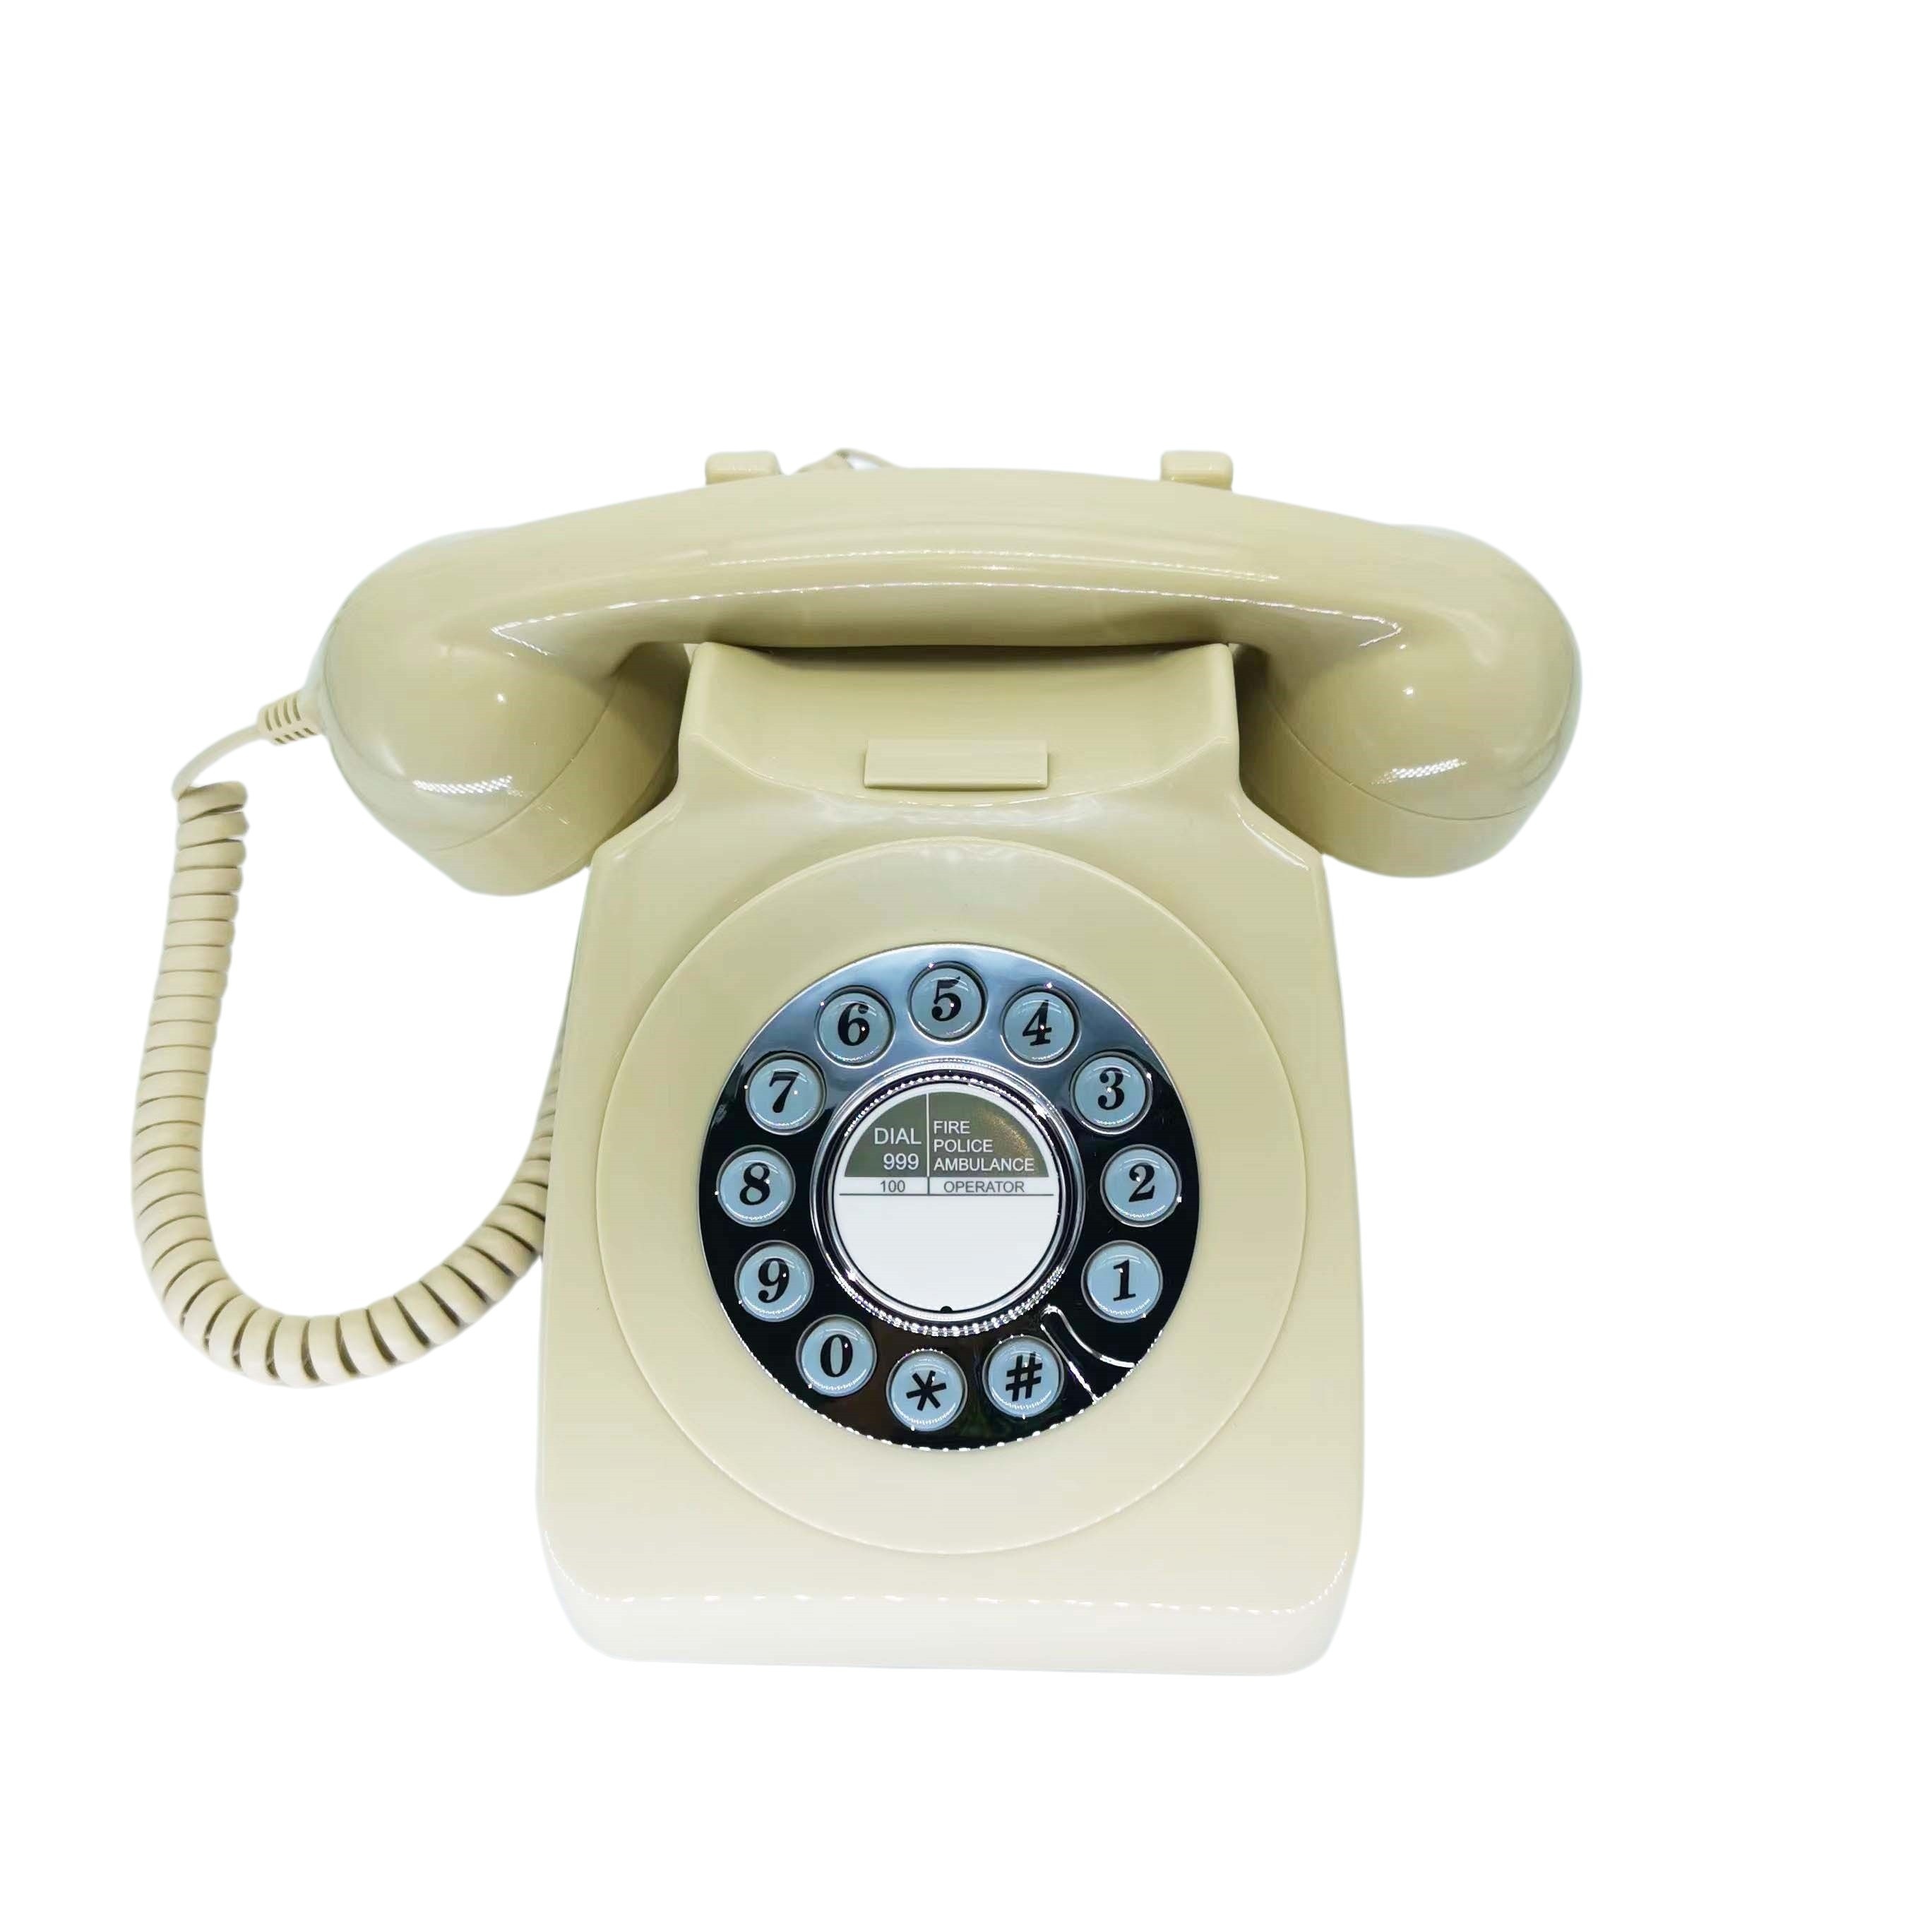 Meilleur design européen antique vintage téléphones filaires vieux  américain rétro téléphone fixe téléphone mini téléphone